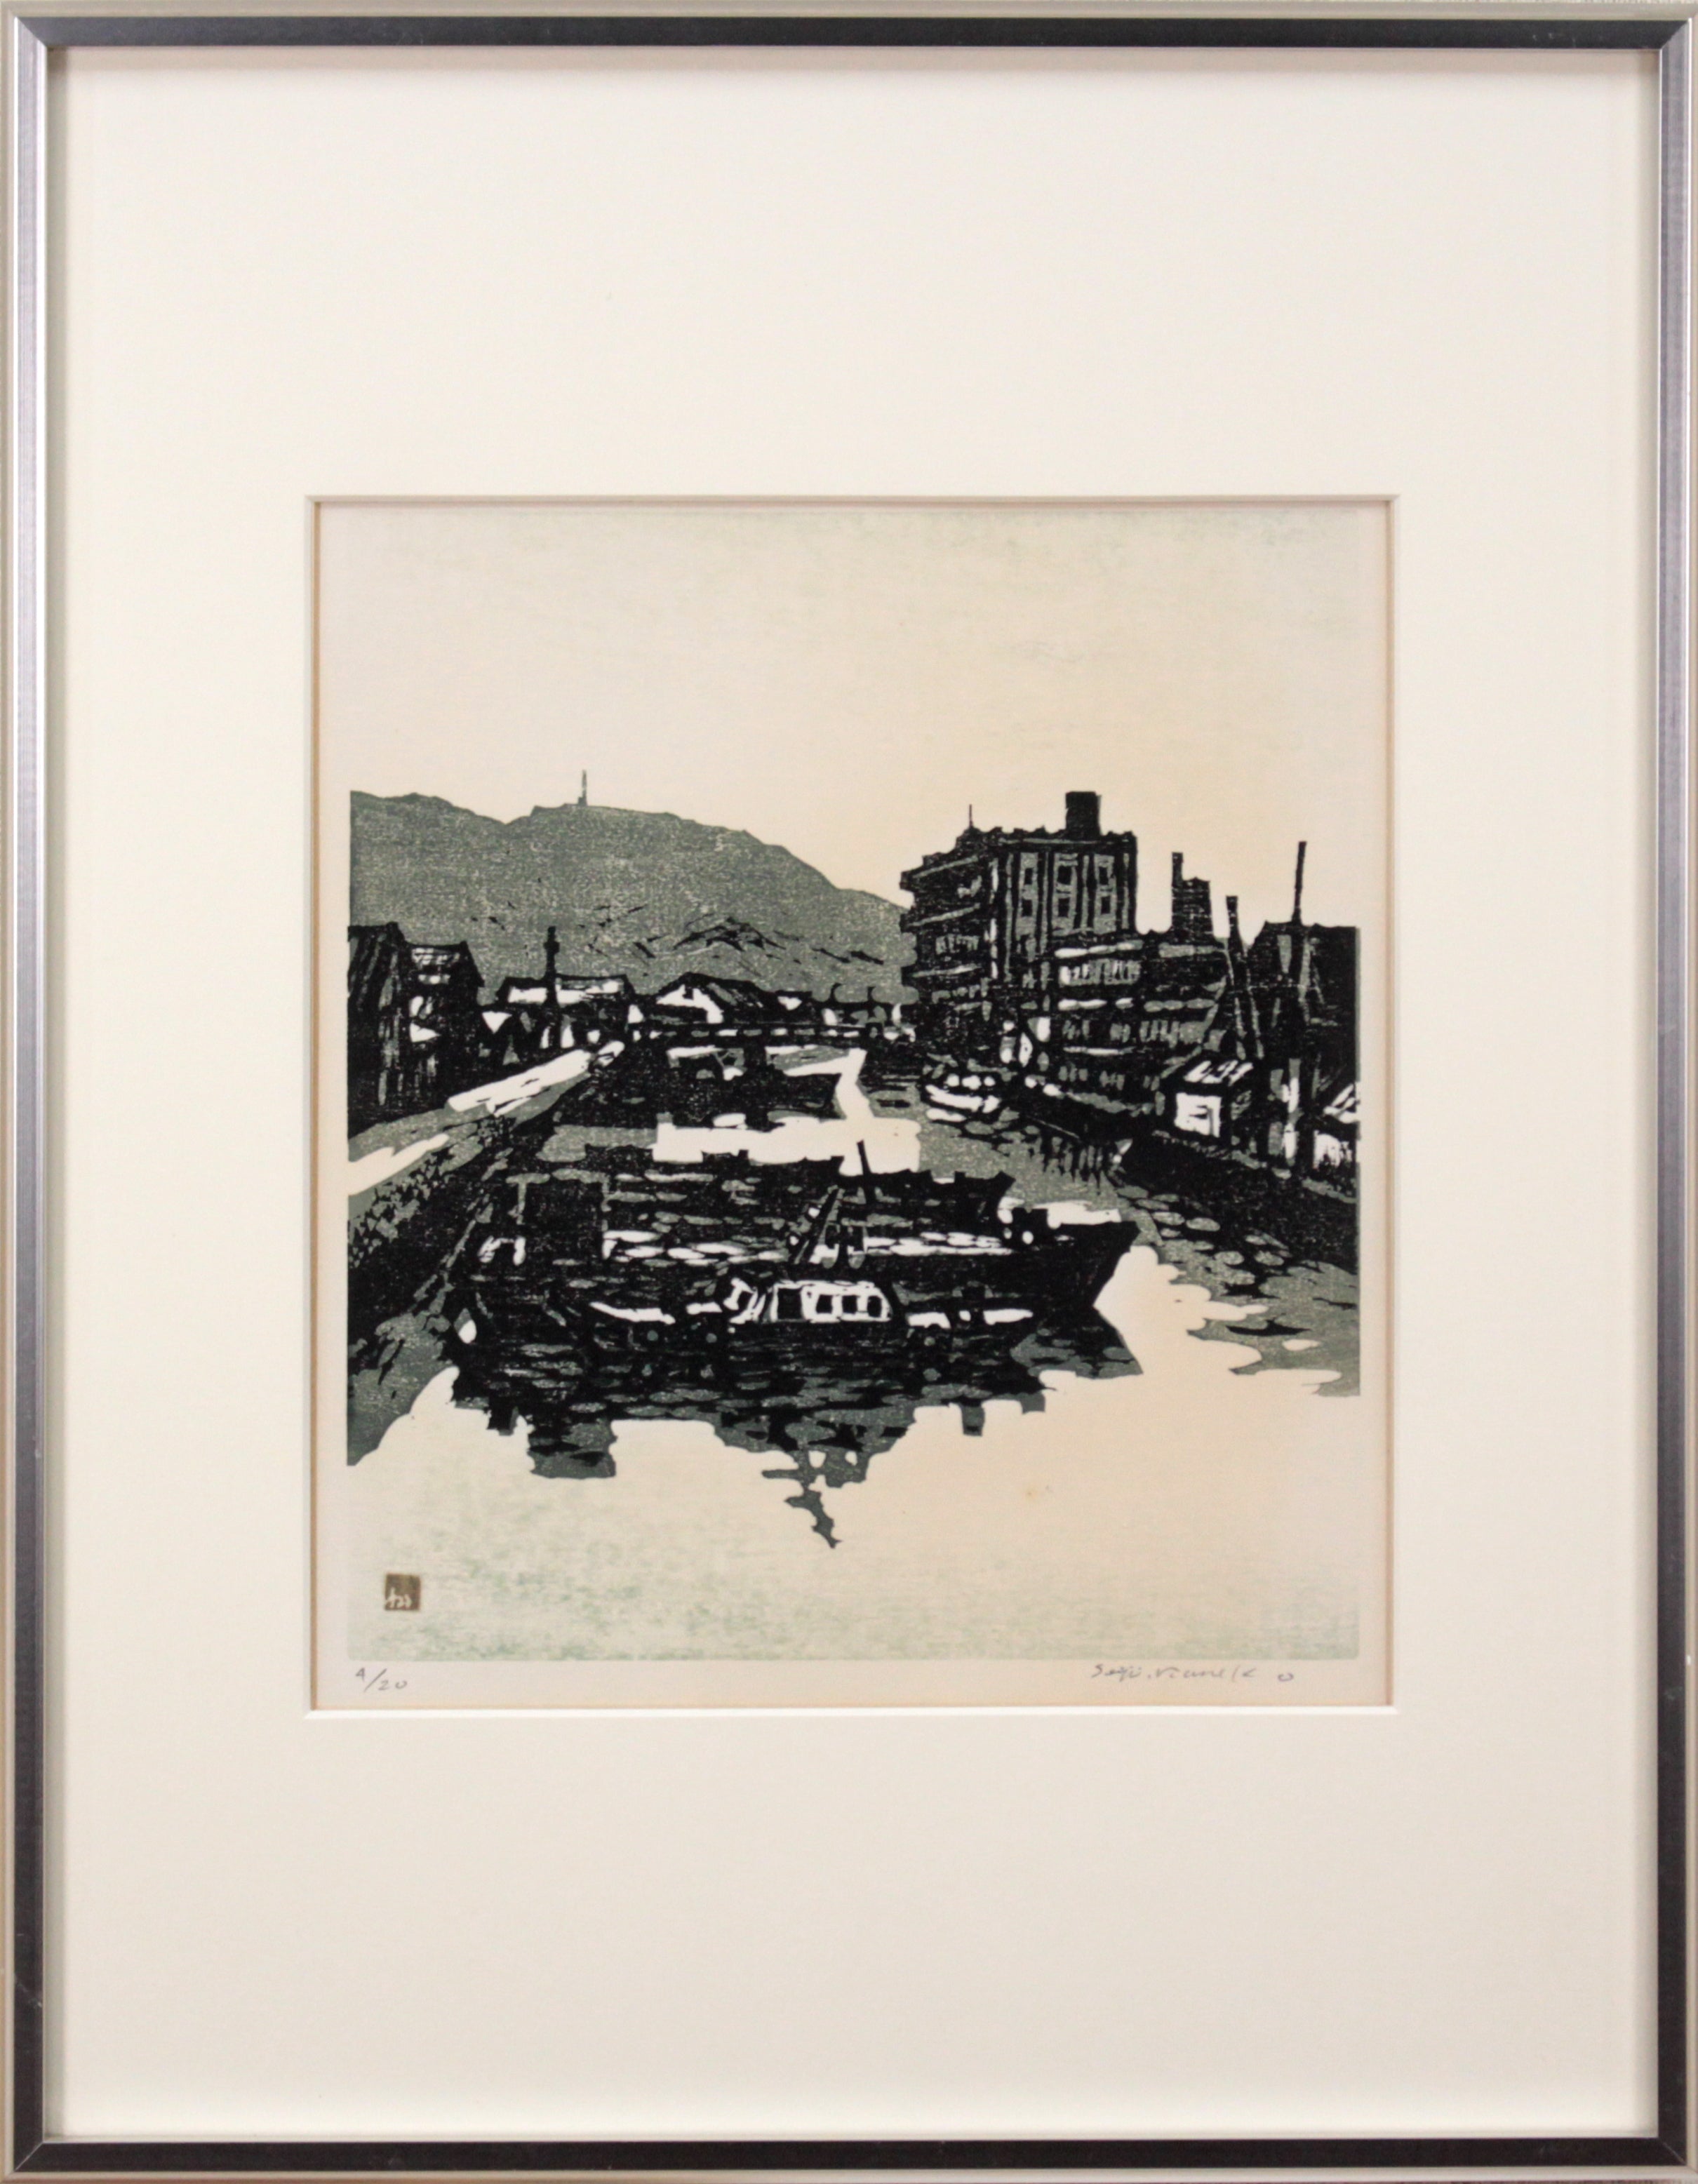 金子誠治『姉弟』木版画 絵画33cm×245cm作品サイズ